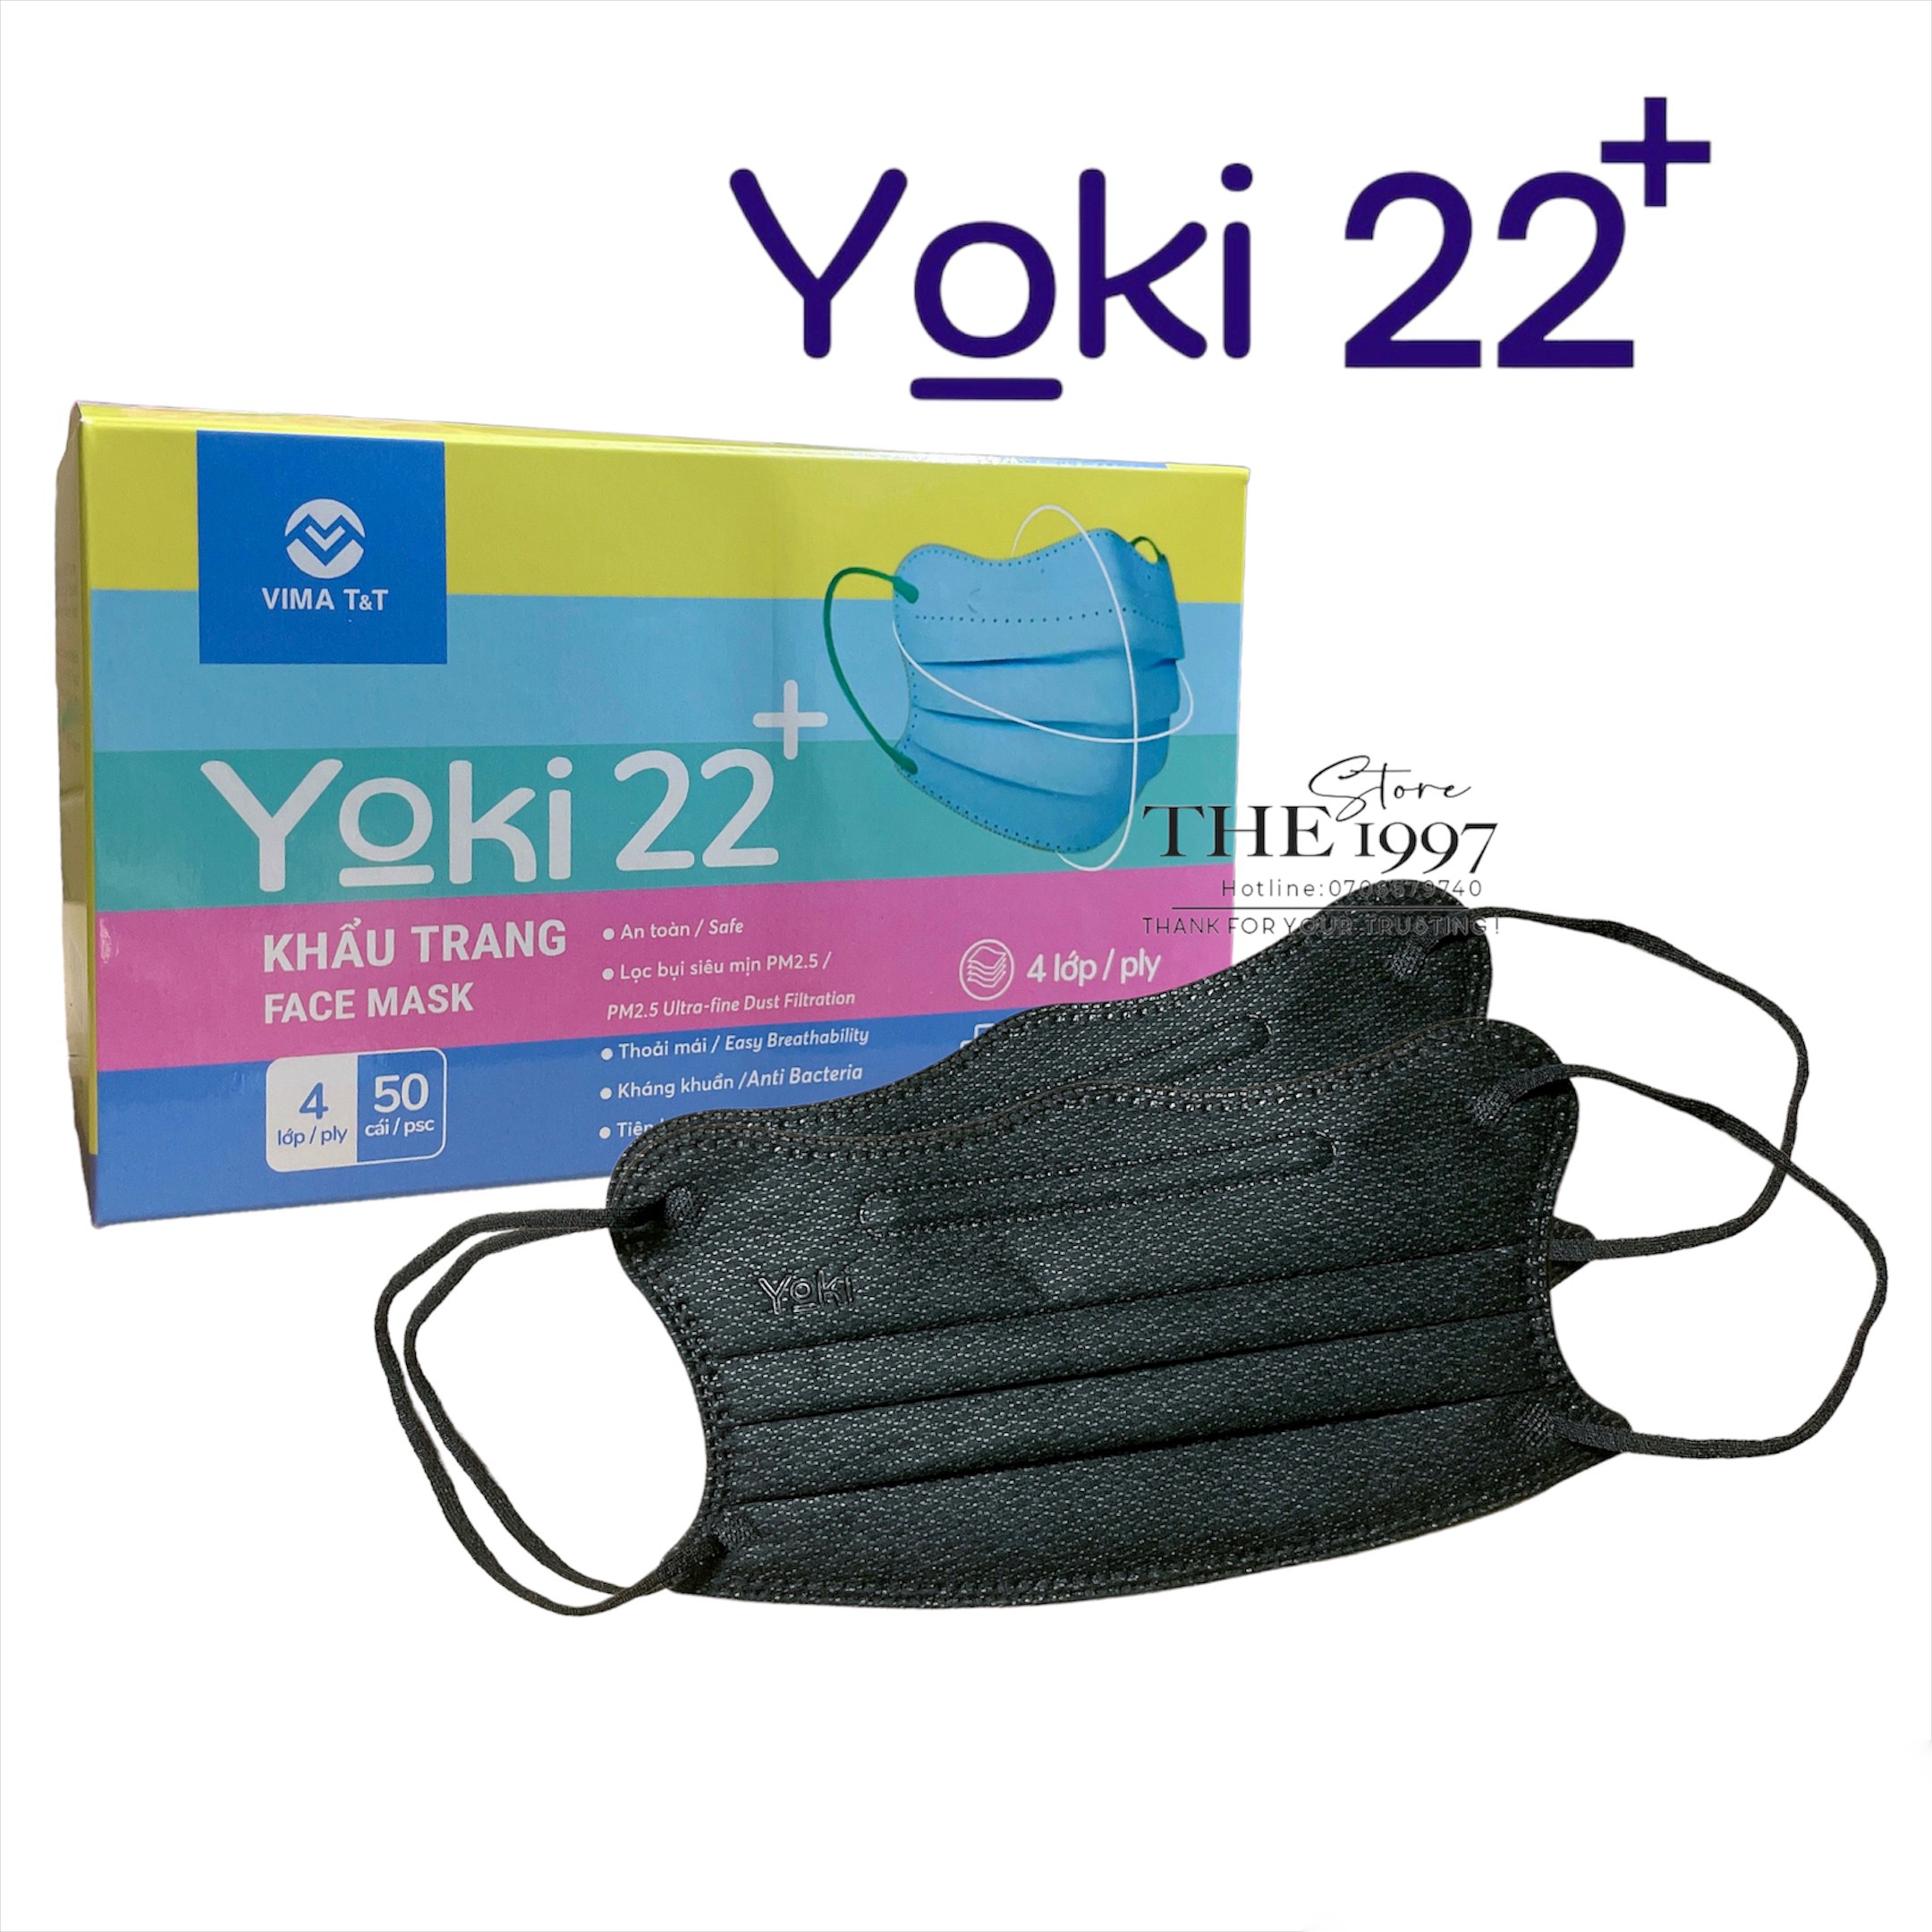 Khẩu Trang Yoki Cua 22+ (Hộp 50cái) 4Lớp kháng khuẩn ,form cải tiến của khẩu trang y tế ,sản phẩm khẩu trang người lớn